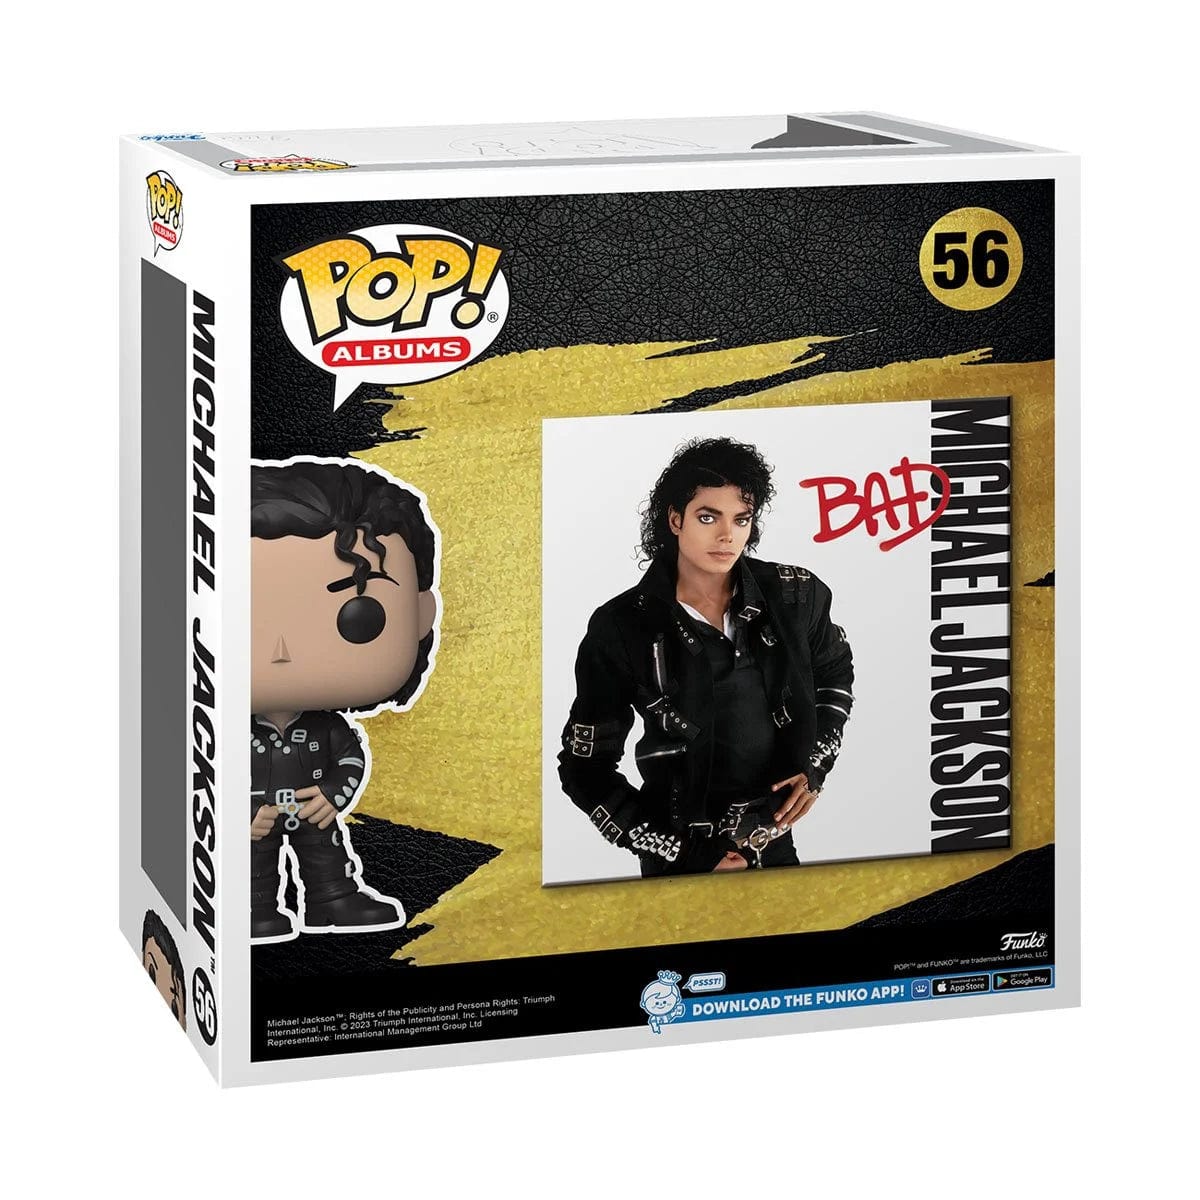 Michael Jackson (Armor) Funko Pop! Vinyl Figure #376